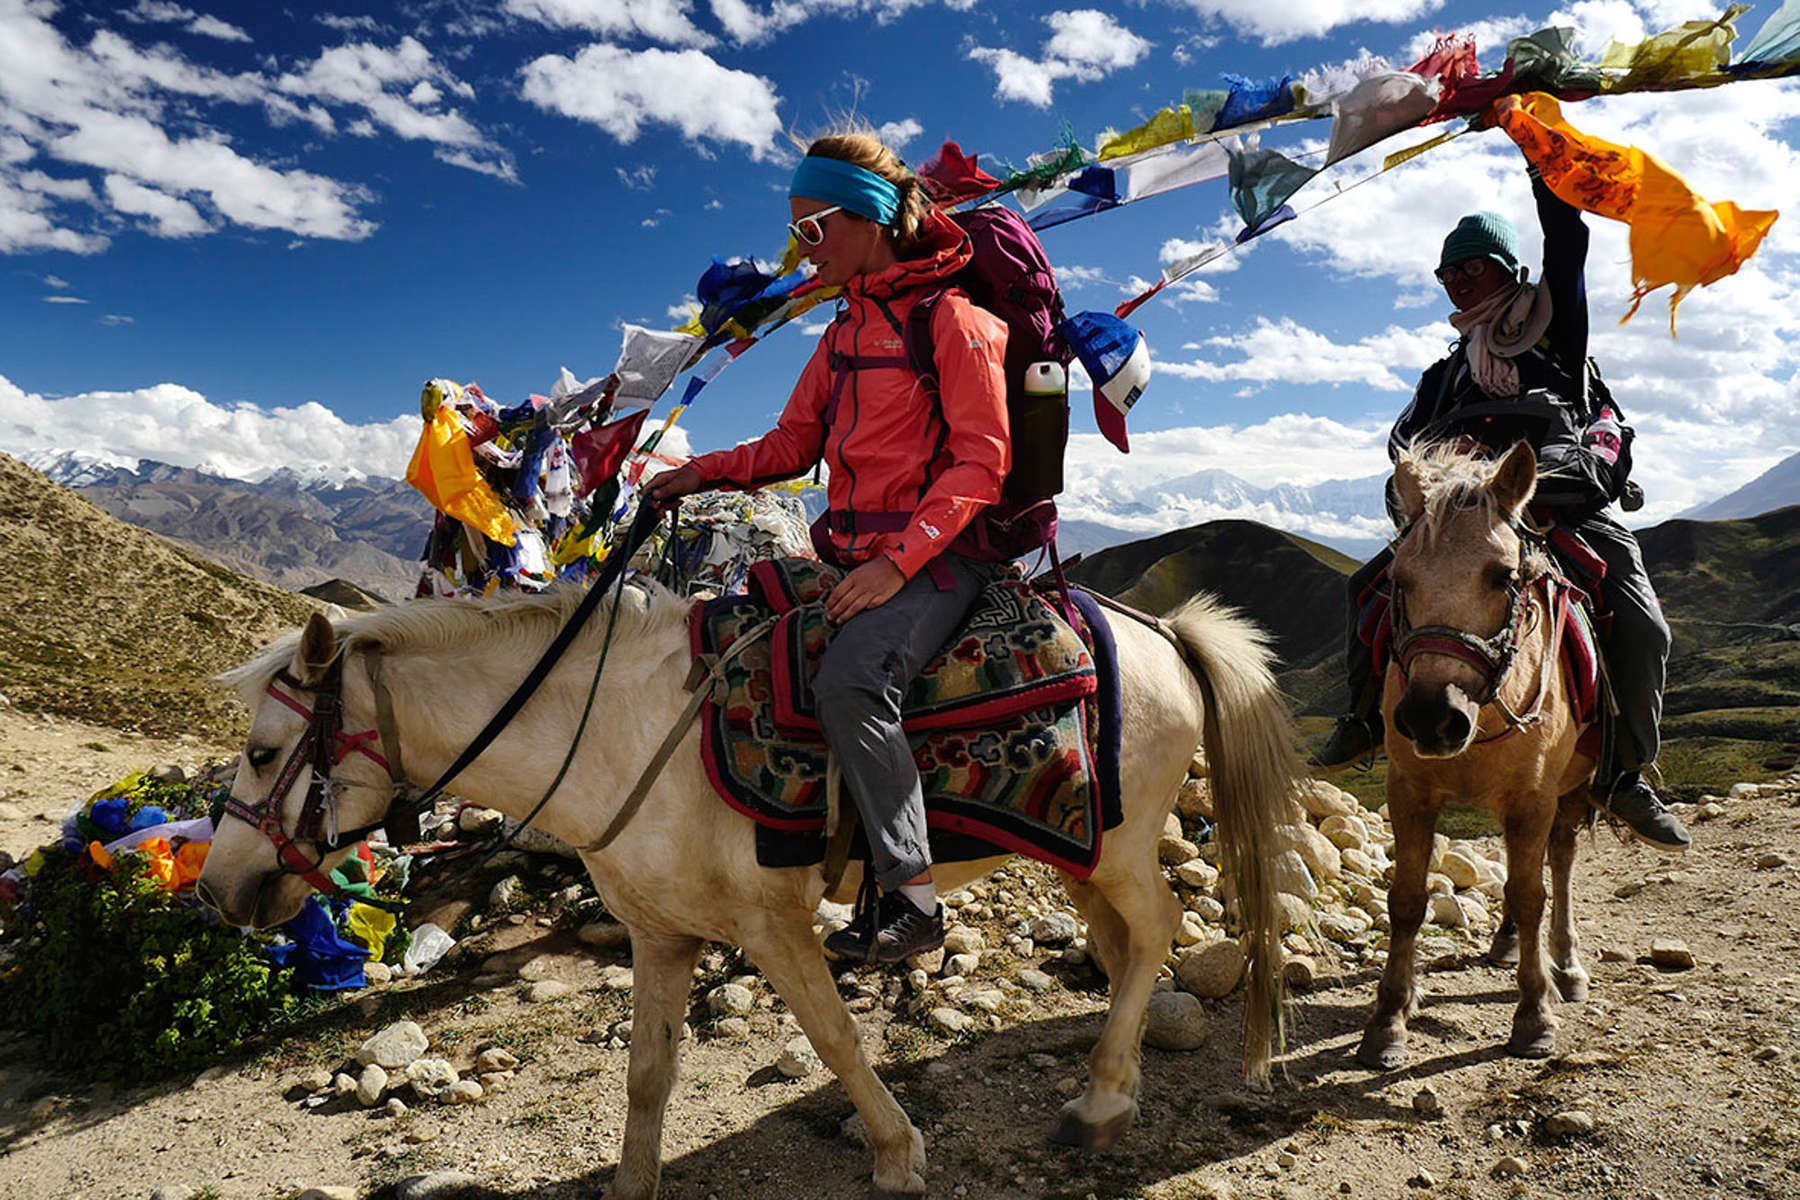 Riders on horseback in Nepal